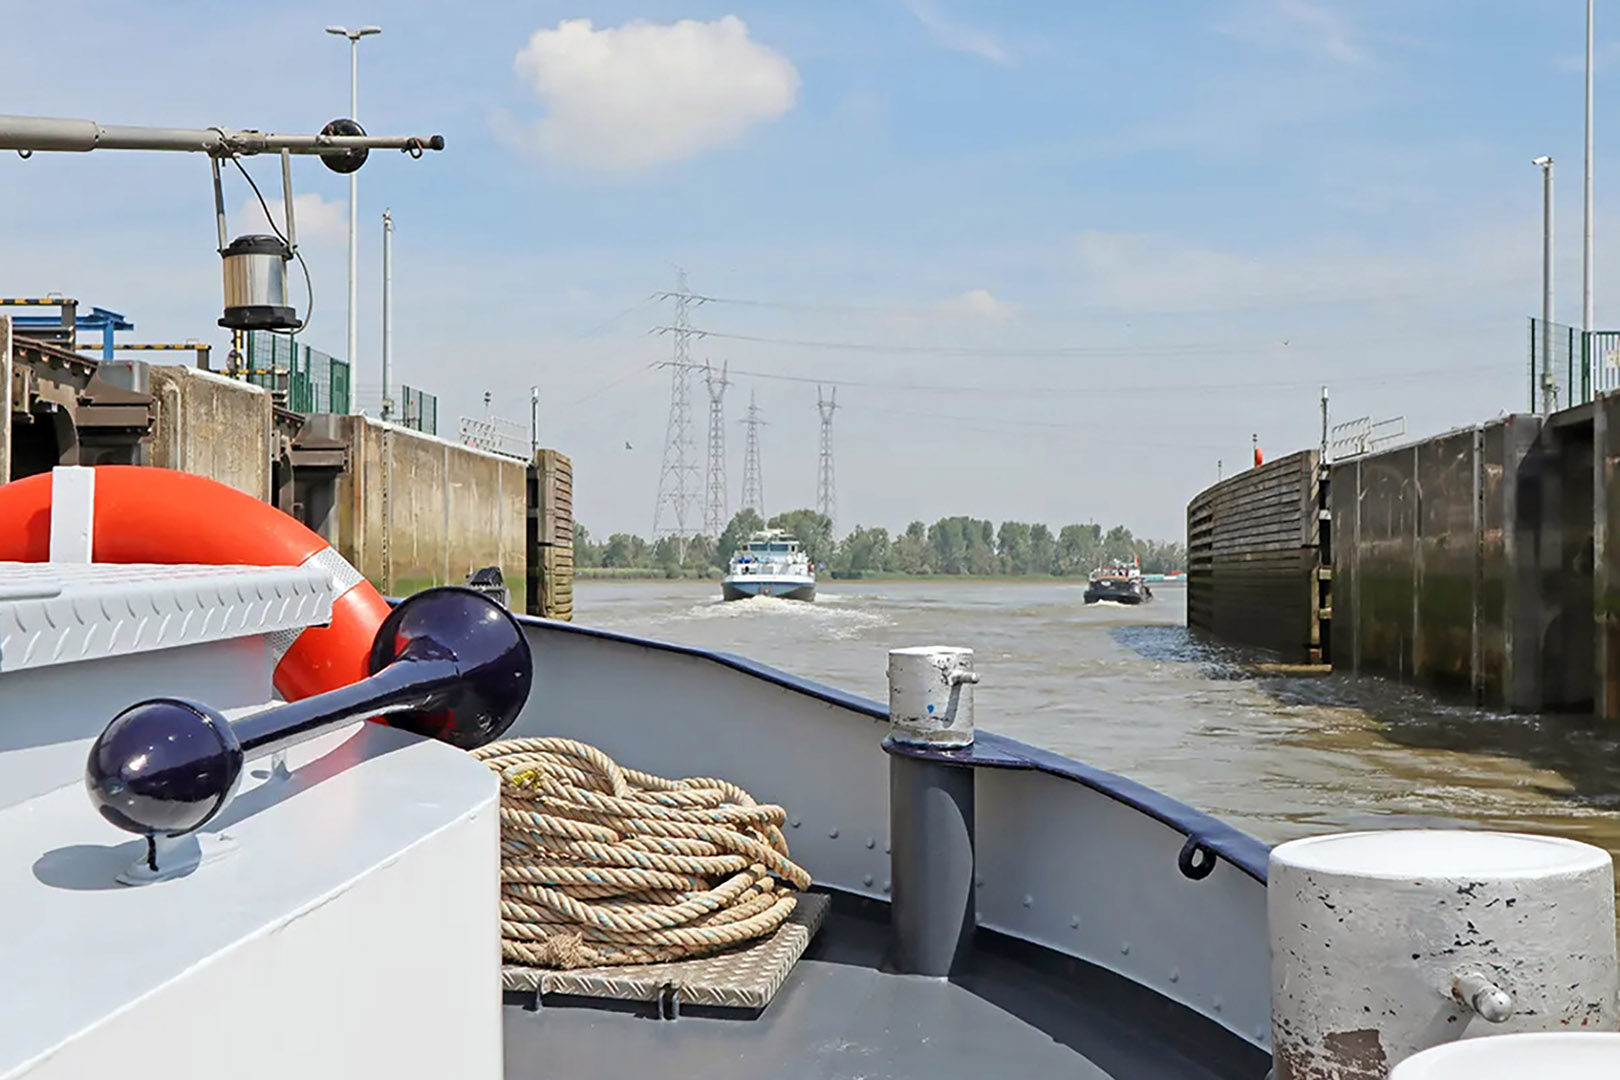 fotoreeks Boat trip from Antwerp to Vilvoorde and Brussels.